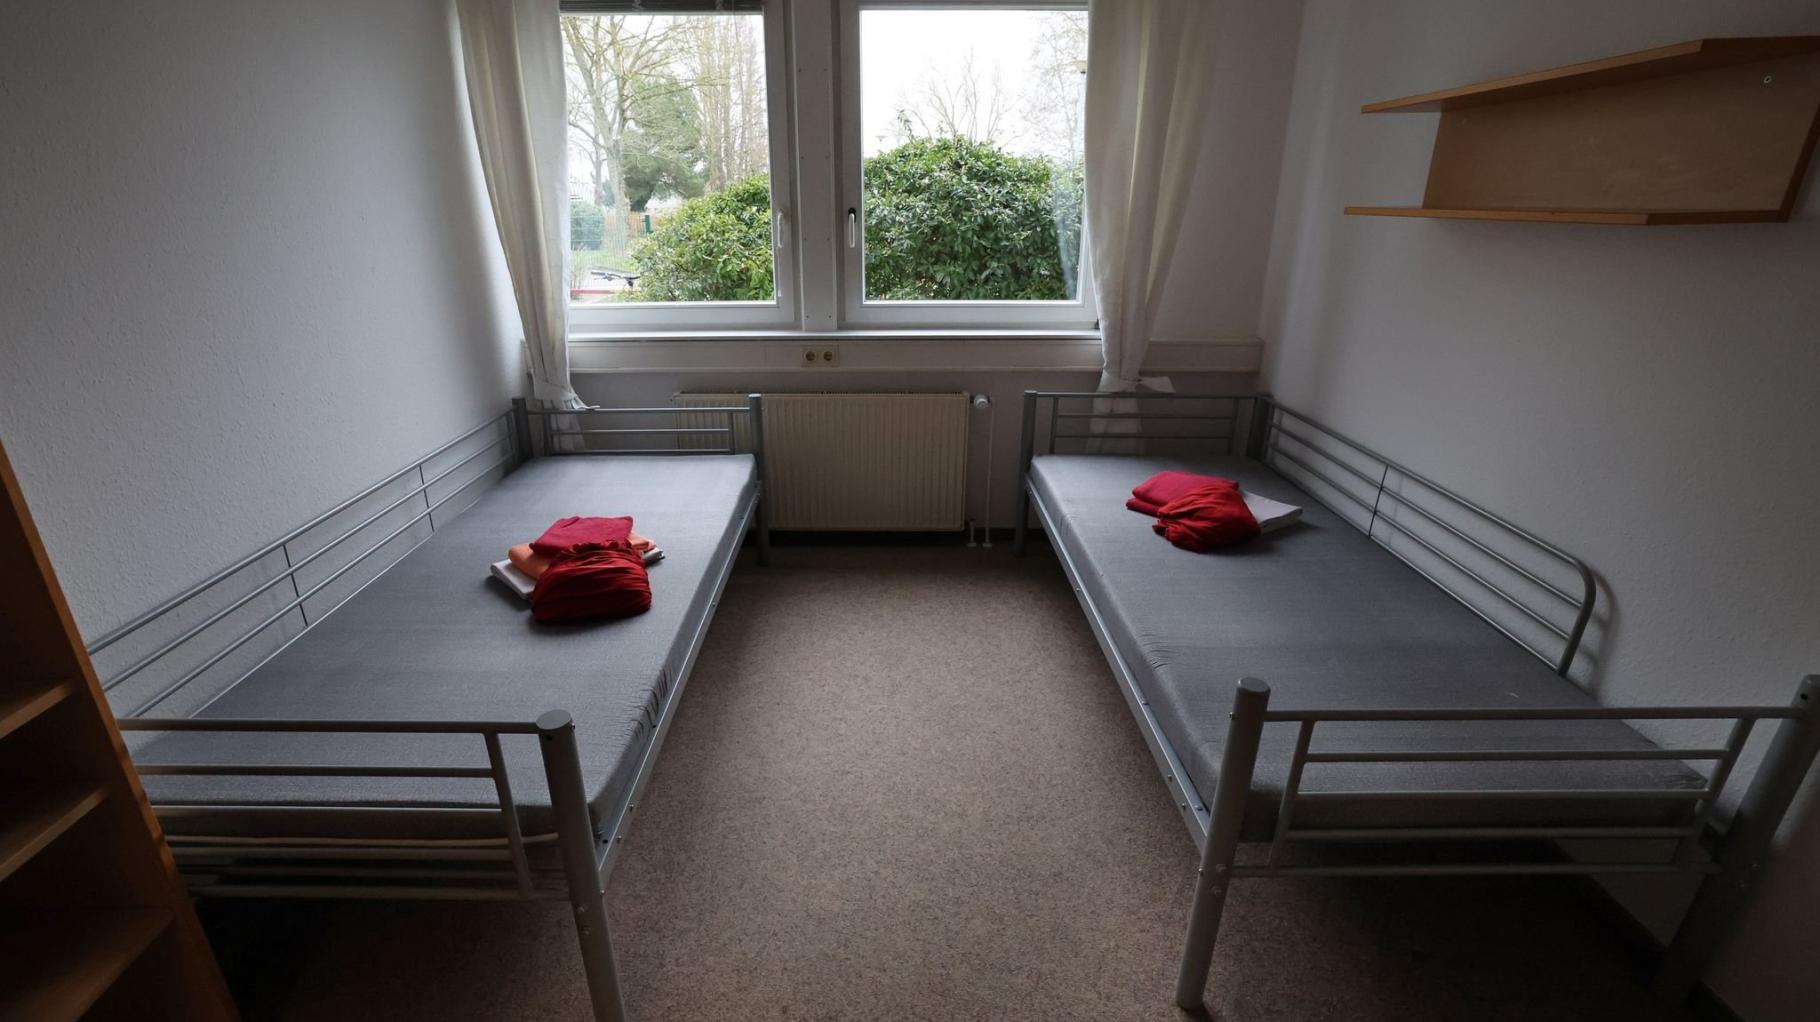 Tarnow: Privatperson will Wohnung für Asylsuchende zur Verfügung stellen